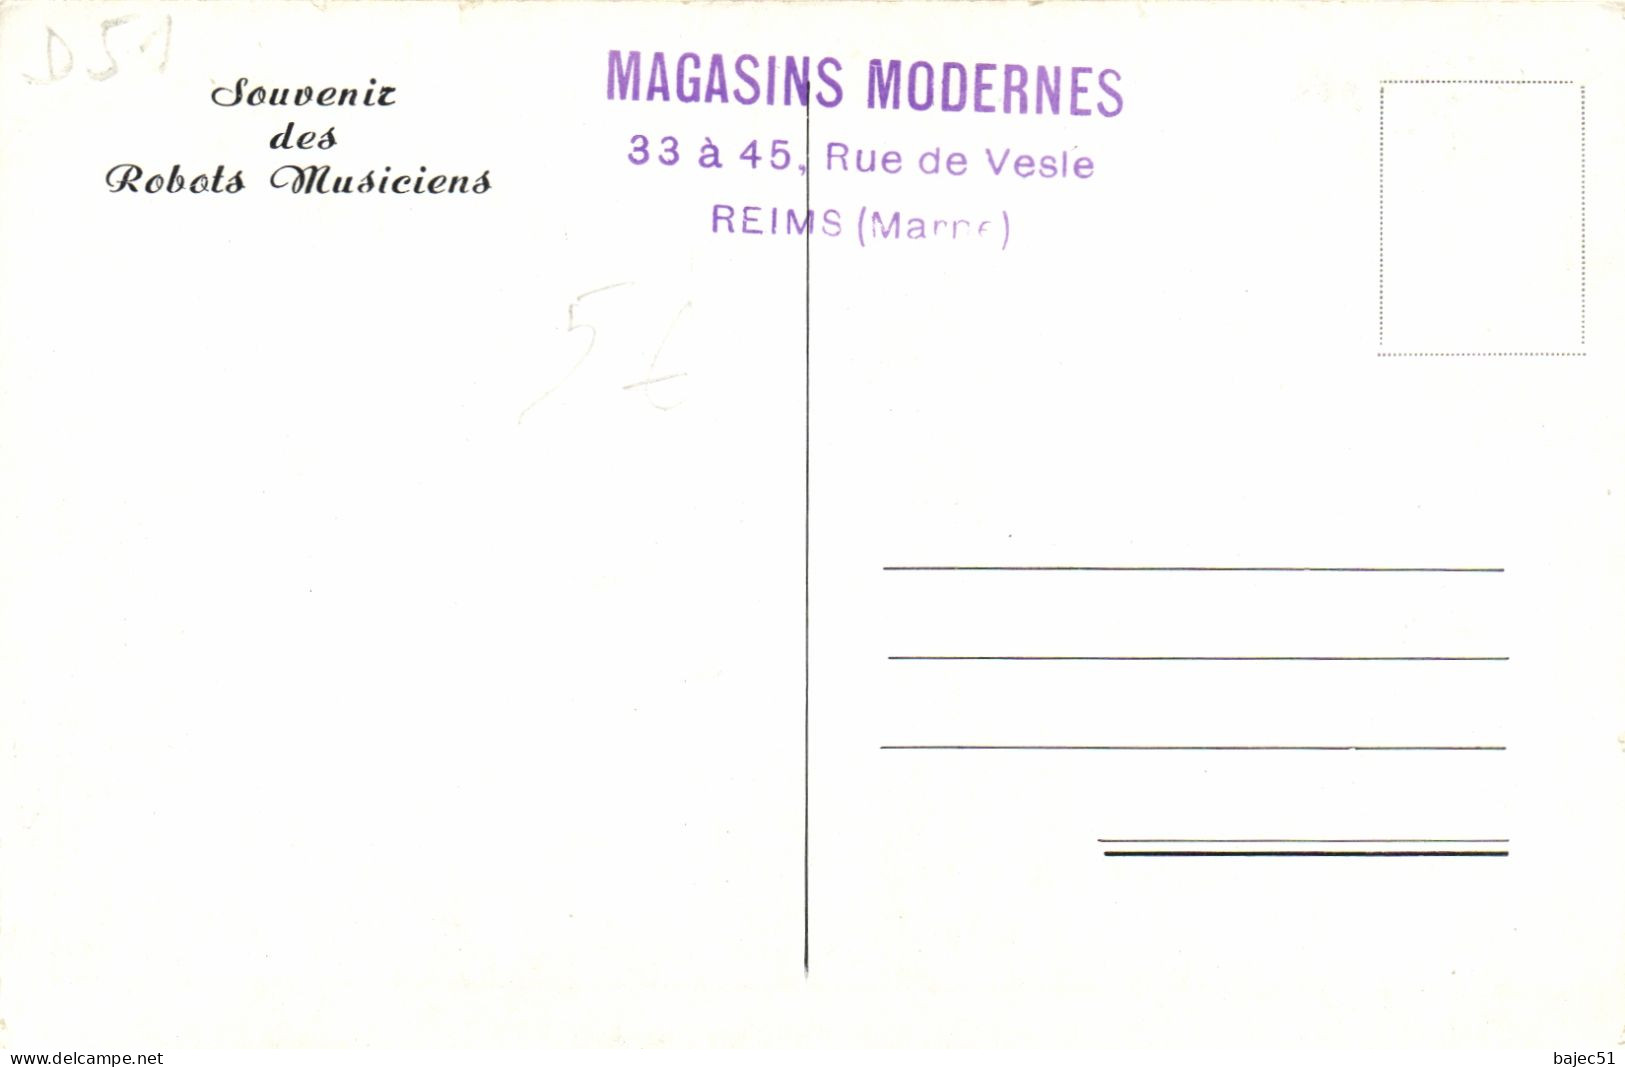 Souvenir Des Robots Musiciens - Magasins Modernes - Reims - Reims